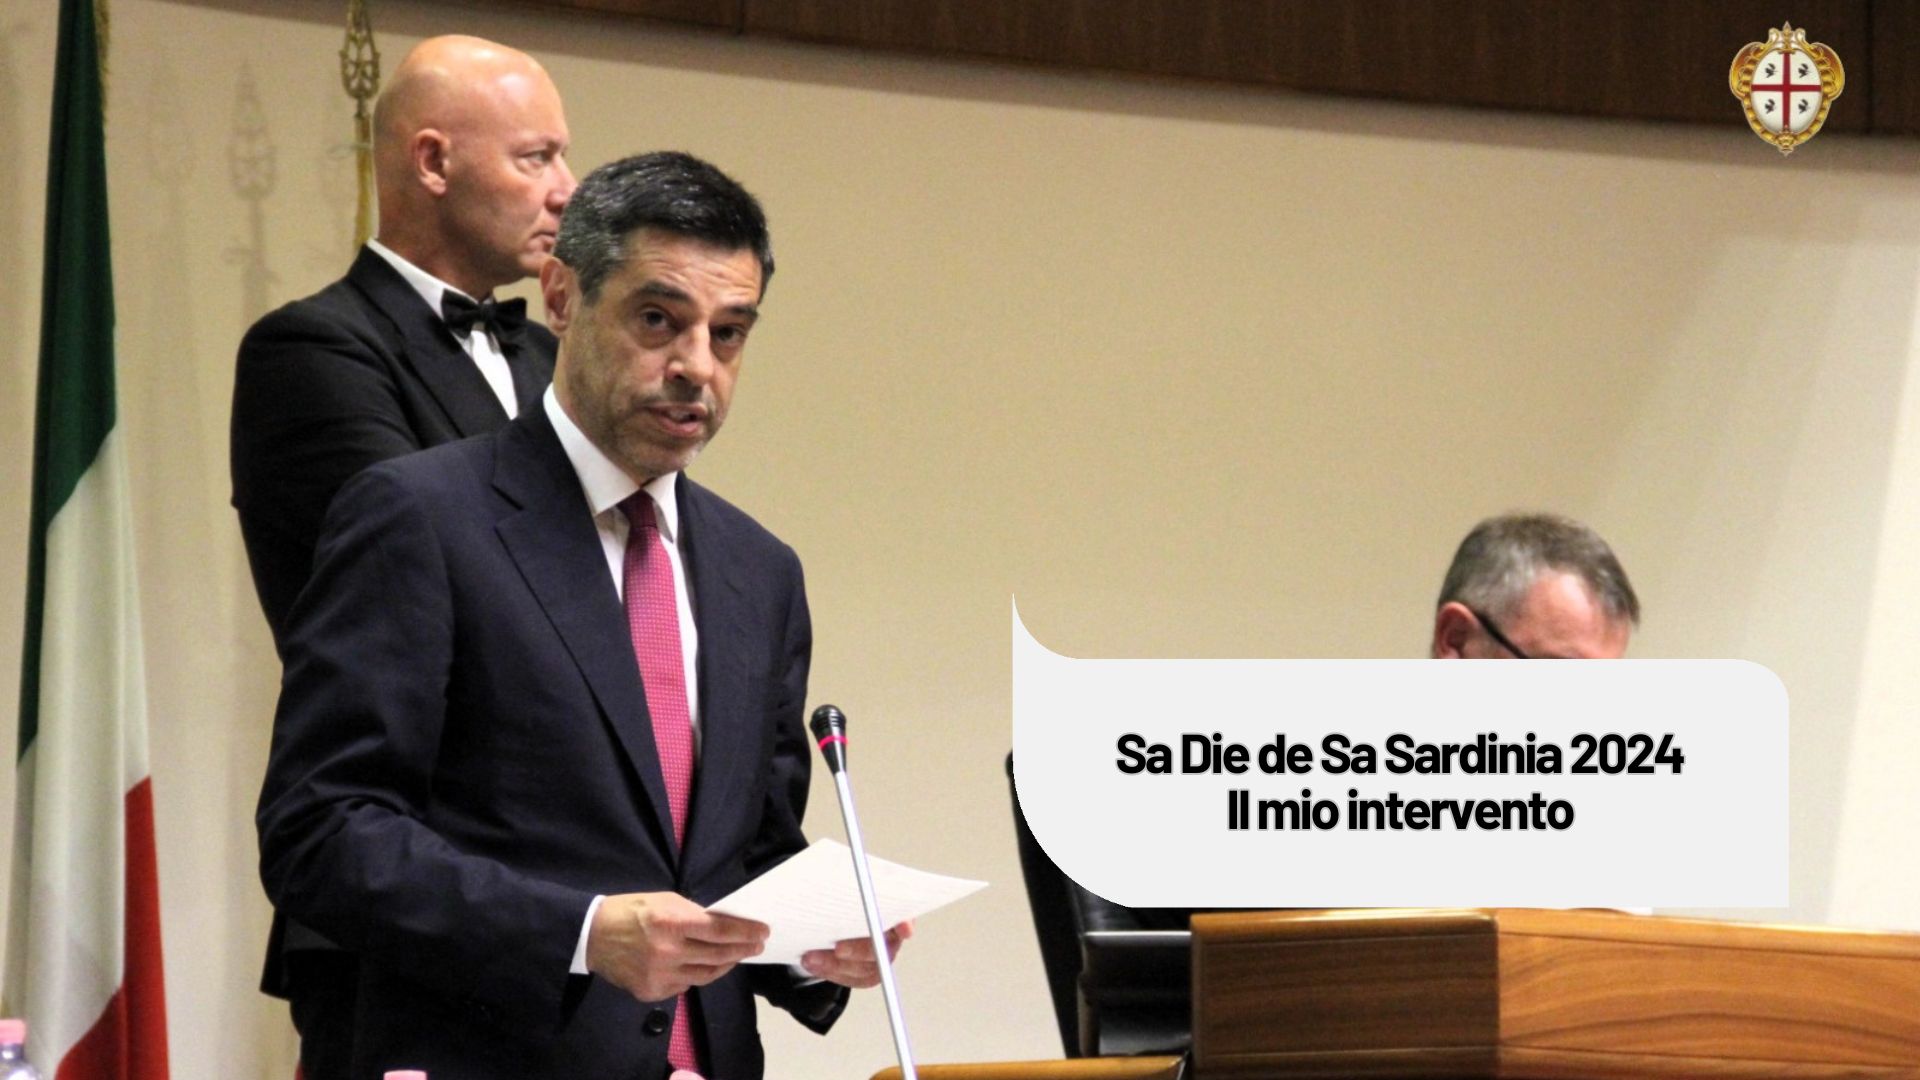 Sa Die de Sa Sardinia 2024 | Il mio intervento in Consiglio Regionale